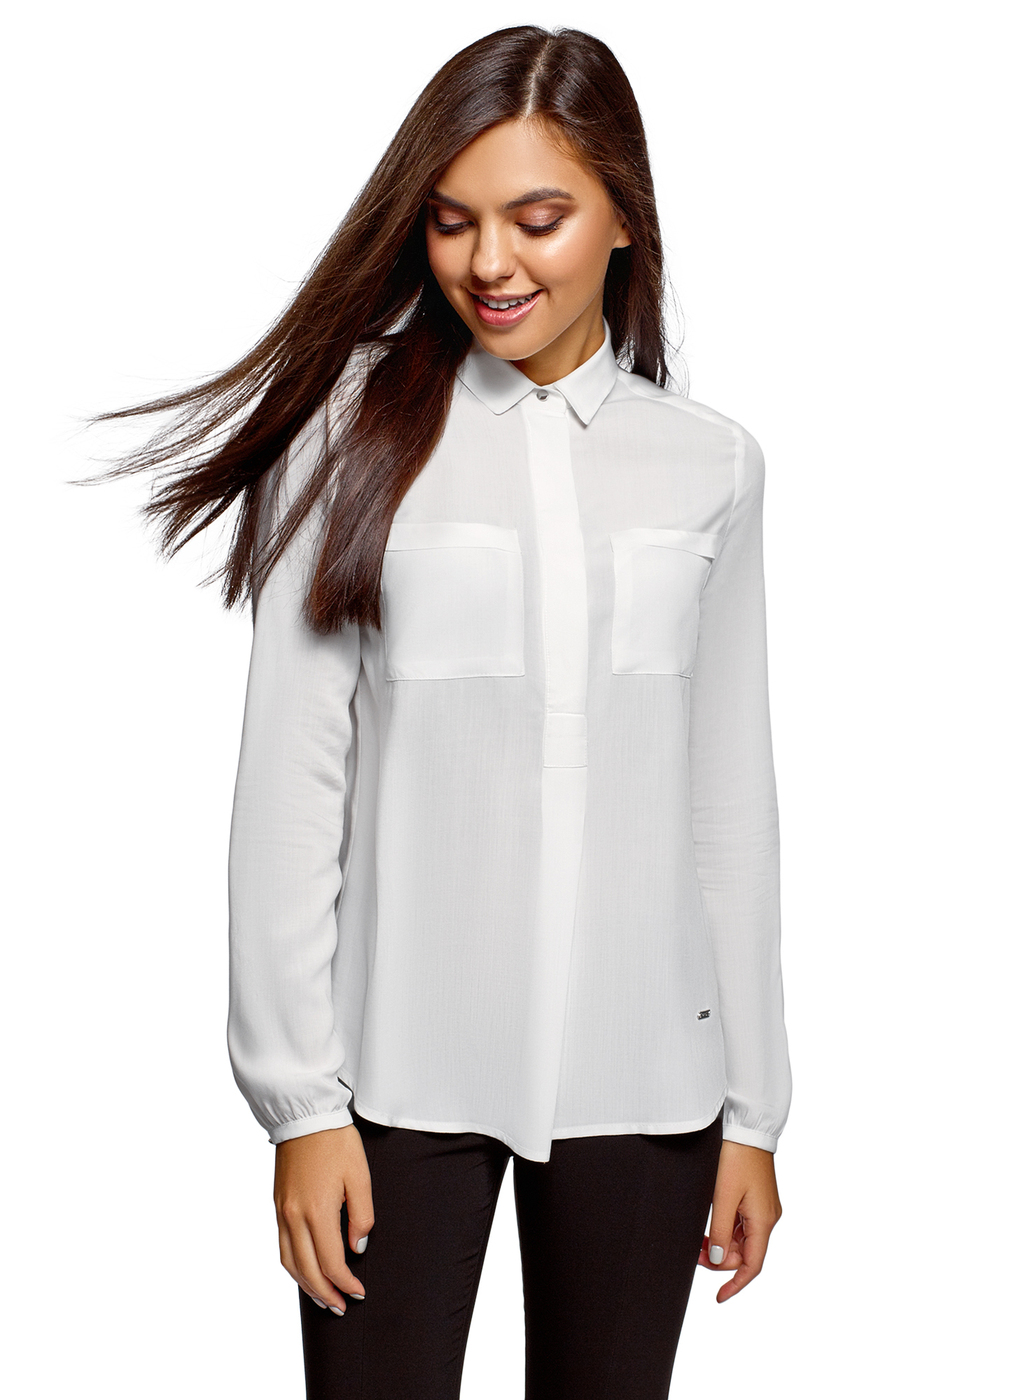 Купить женскую белую рубашку с длинным рукавом. Белая блузка oodji. Рубашка женская. Белая рубашка женская. Белая блузка женская.